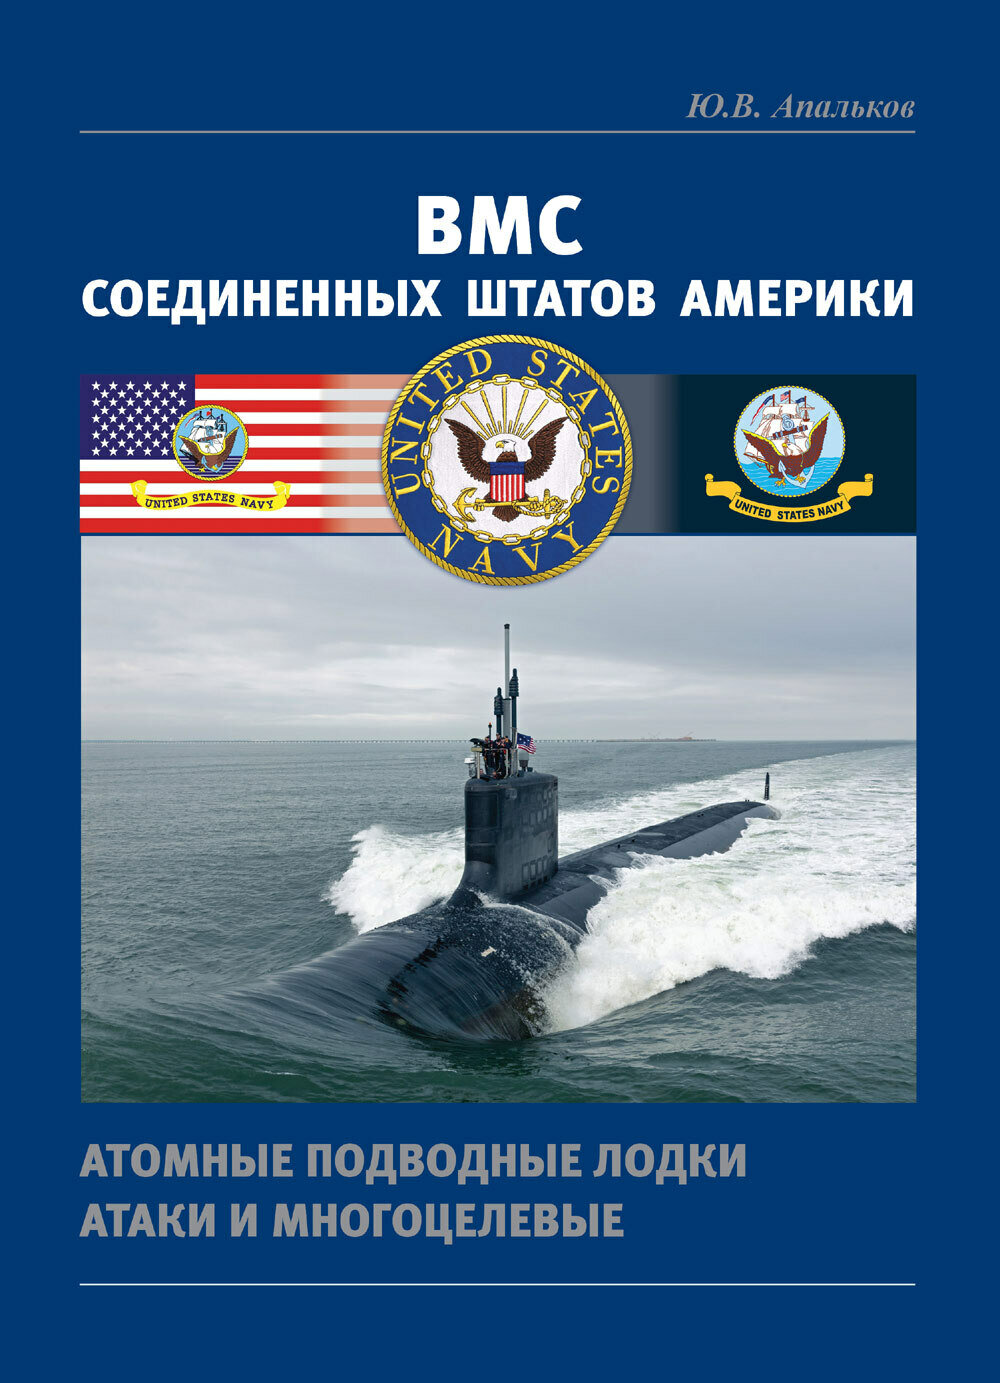 ВМС Соединенных Штатов Америки Атомные подводные лодки атаки и многоцелевые - фото №1